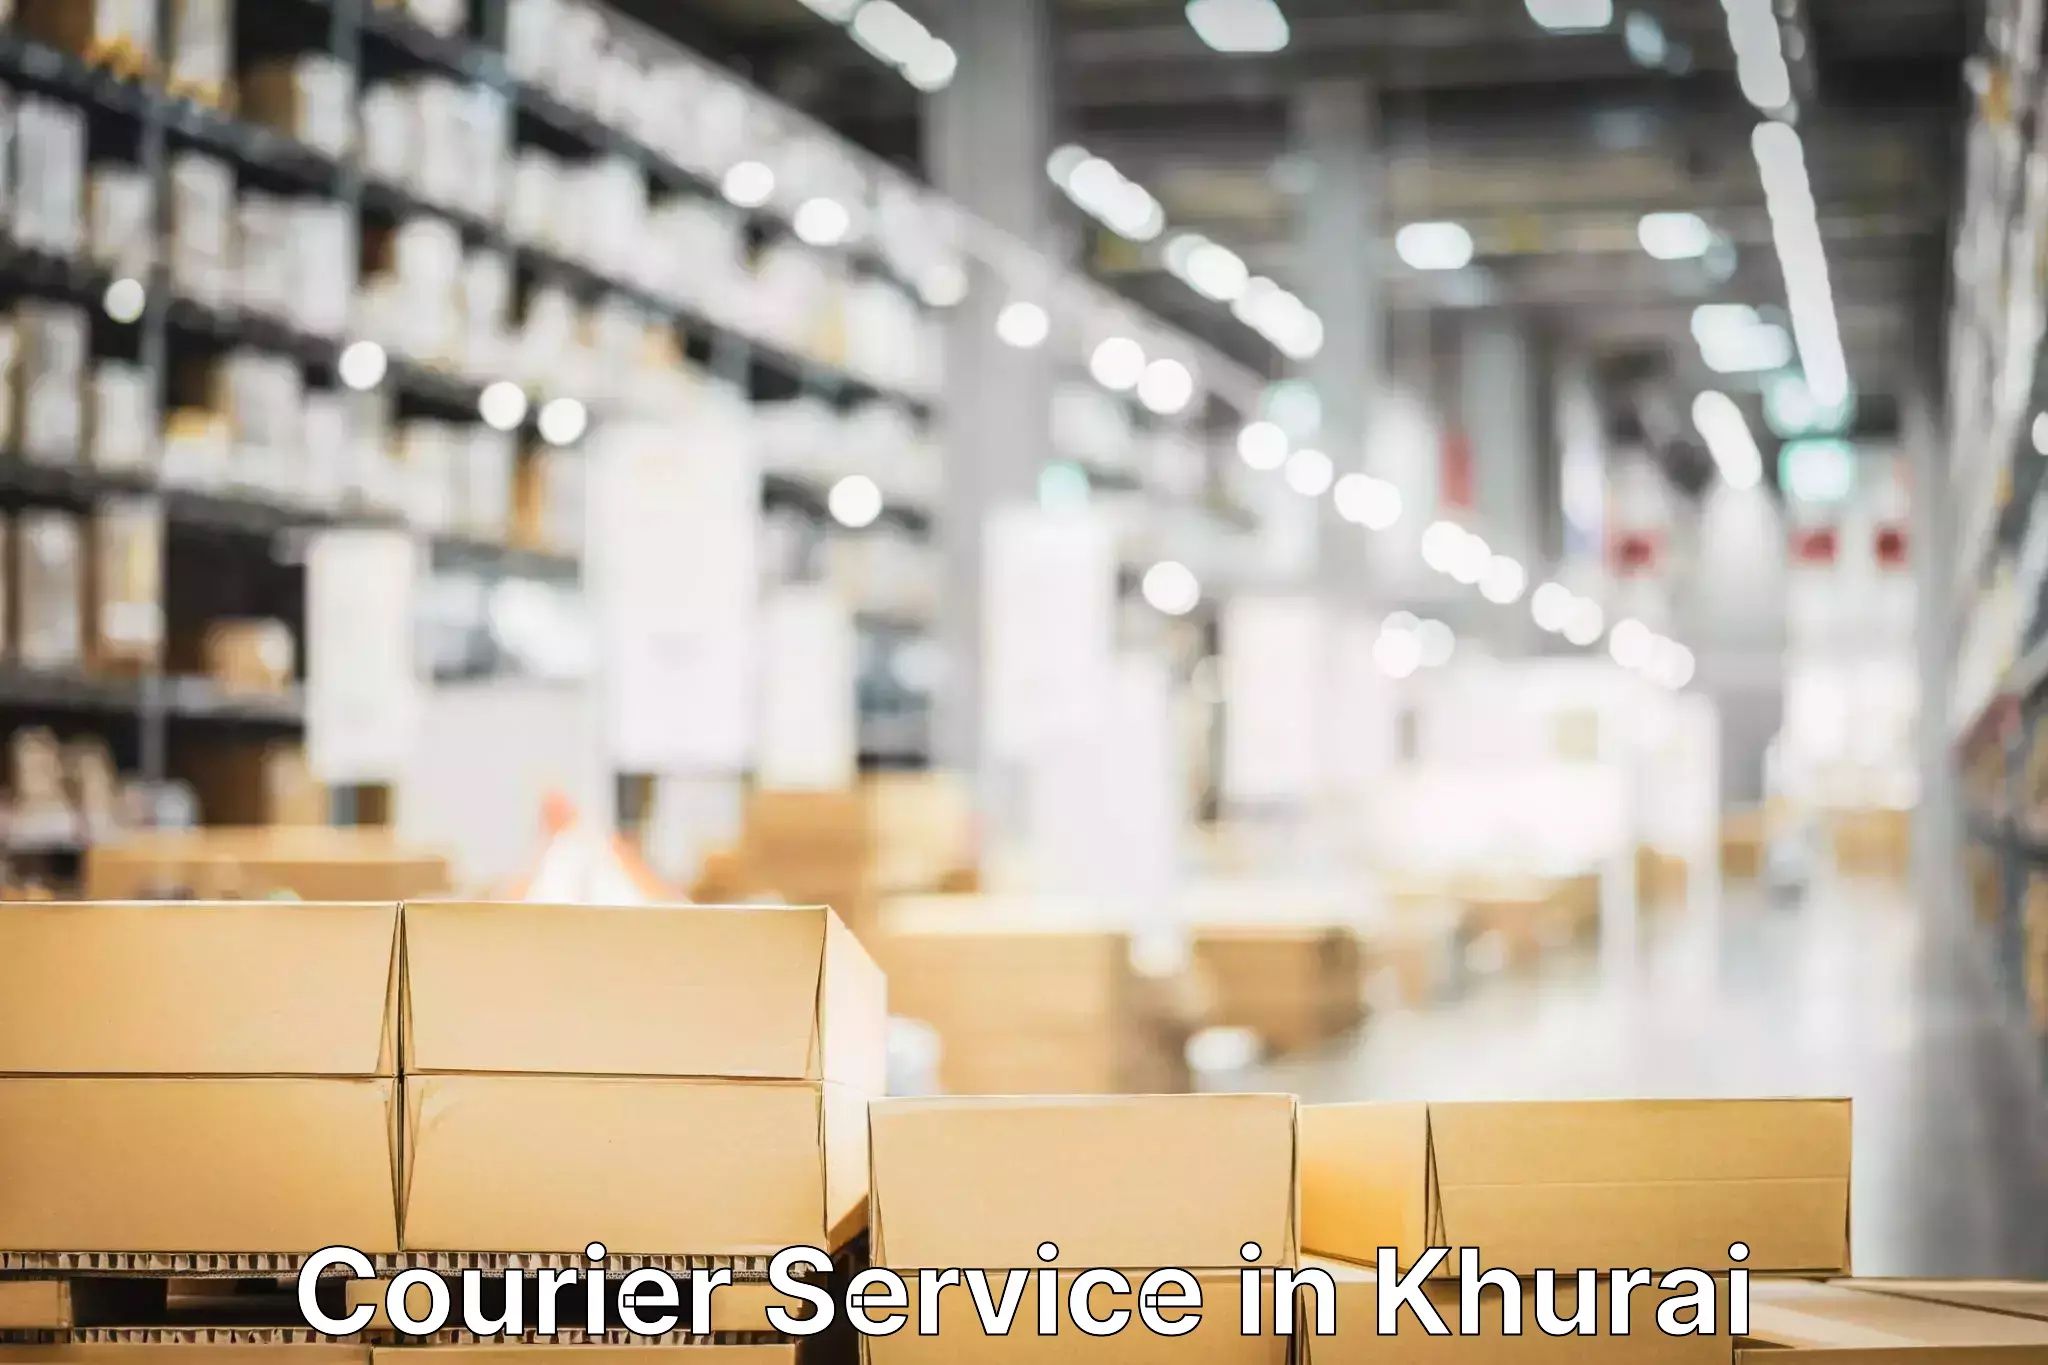 Nationwide shipping capabilities in Khurai